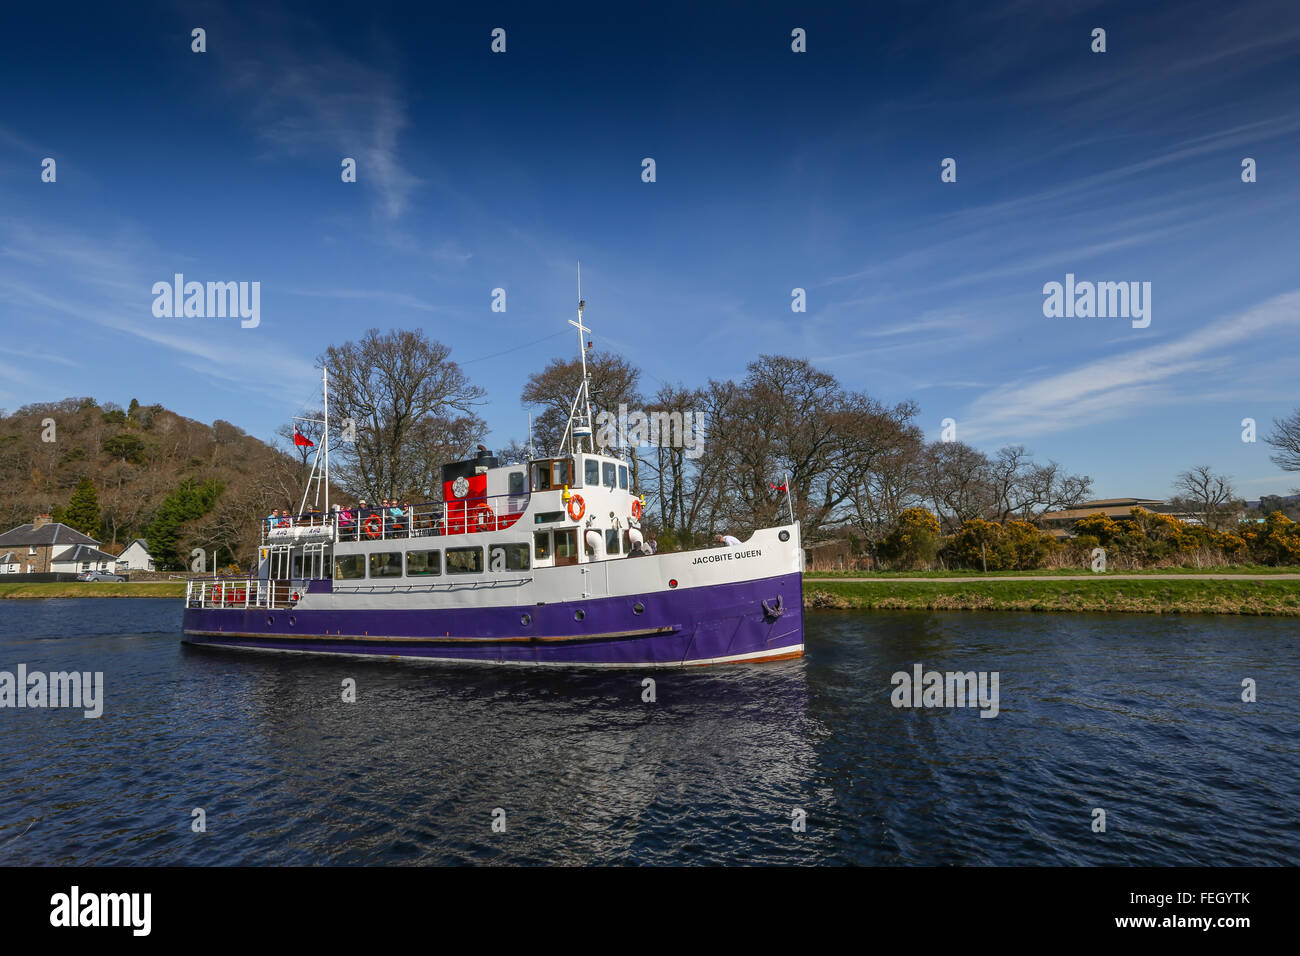 Jacobite Queen Tourenboot Segeln nach Loch Ness vor den Toren der Stadt Inverness in den Highlands von Schottland, UK Stockfoto